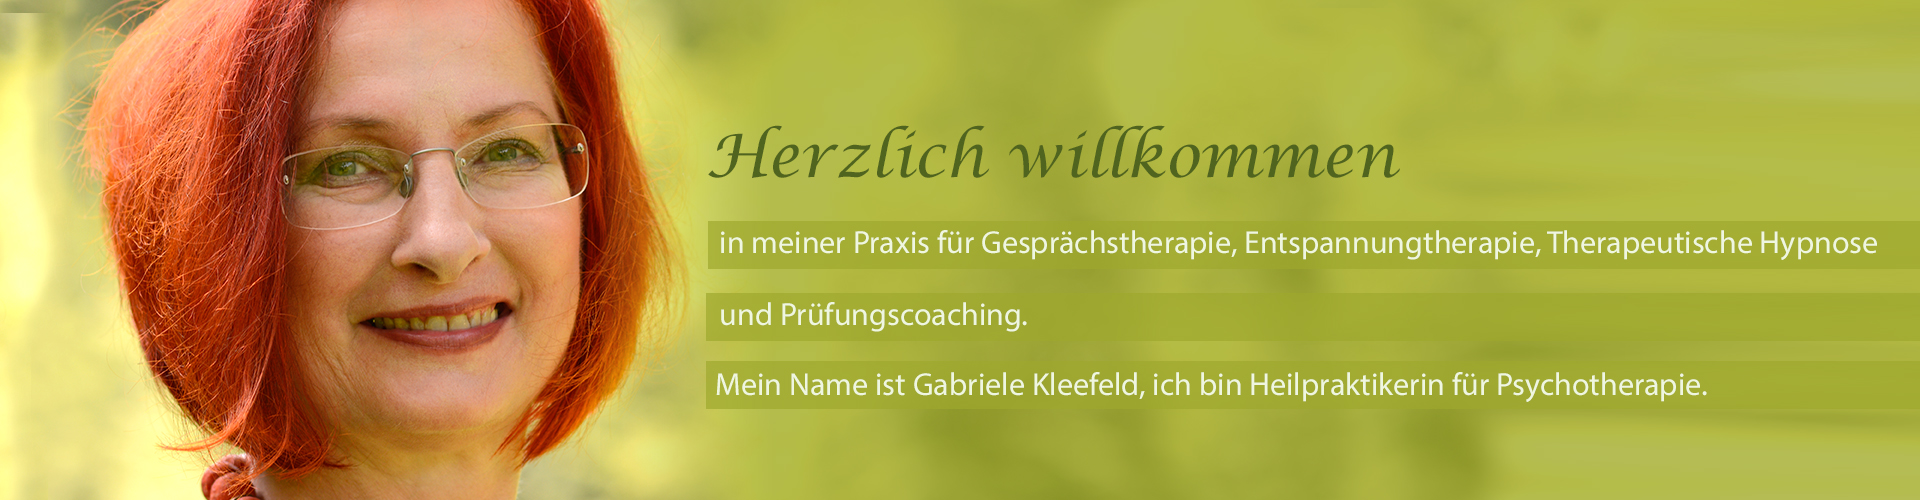 Praxis für Gesprächstherapie, Entspannungstherapie, Therapeutische Hypnose, Gabriele Kleefeld, Heilpraktikerin für Psychotherapie